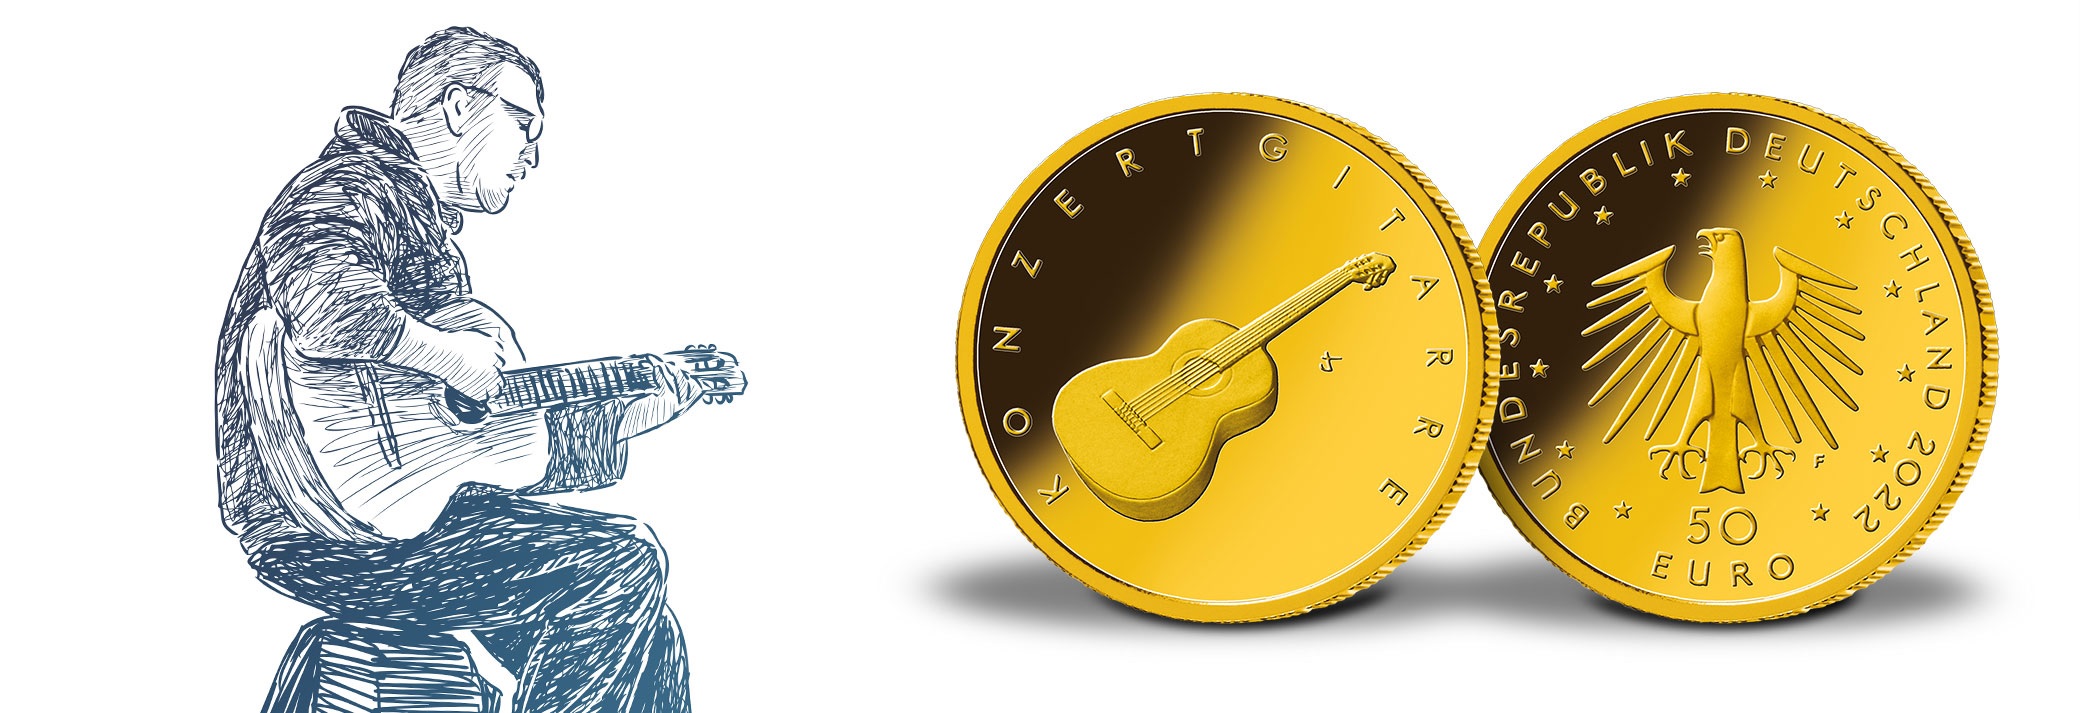 (EUR03.Proof.2022.SGM2201M44S5) 50 € Germany 2022 F BU gold - Concert guitar (blog illustration) (zoom)